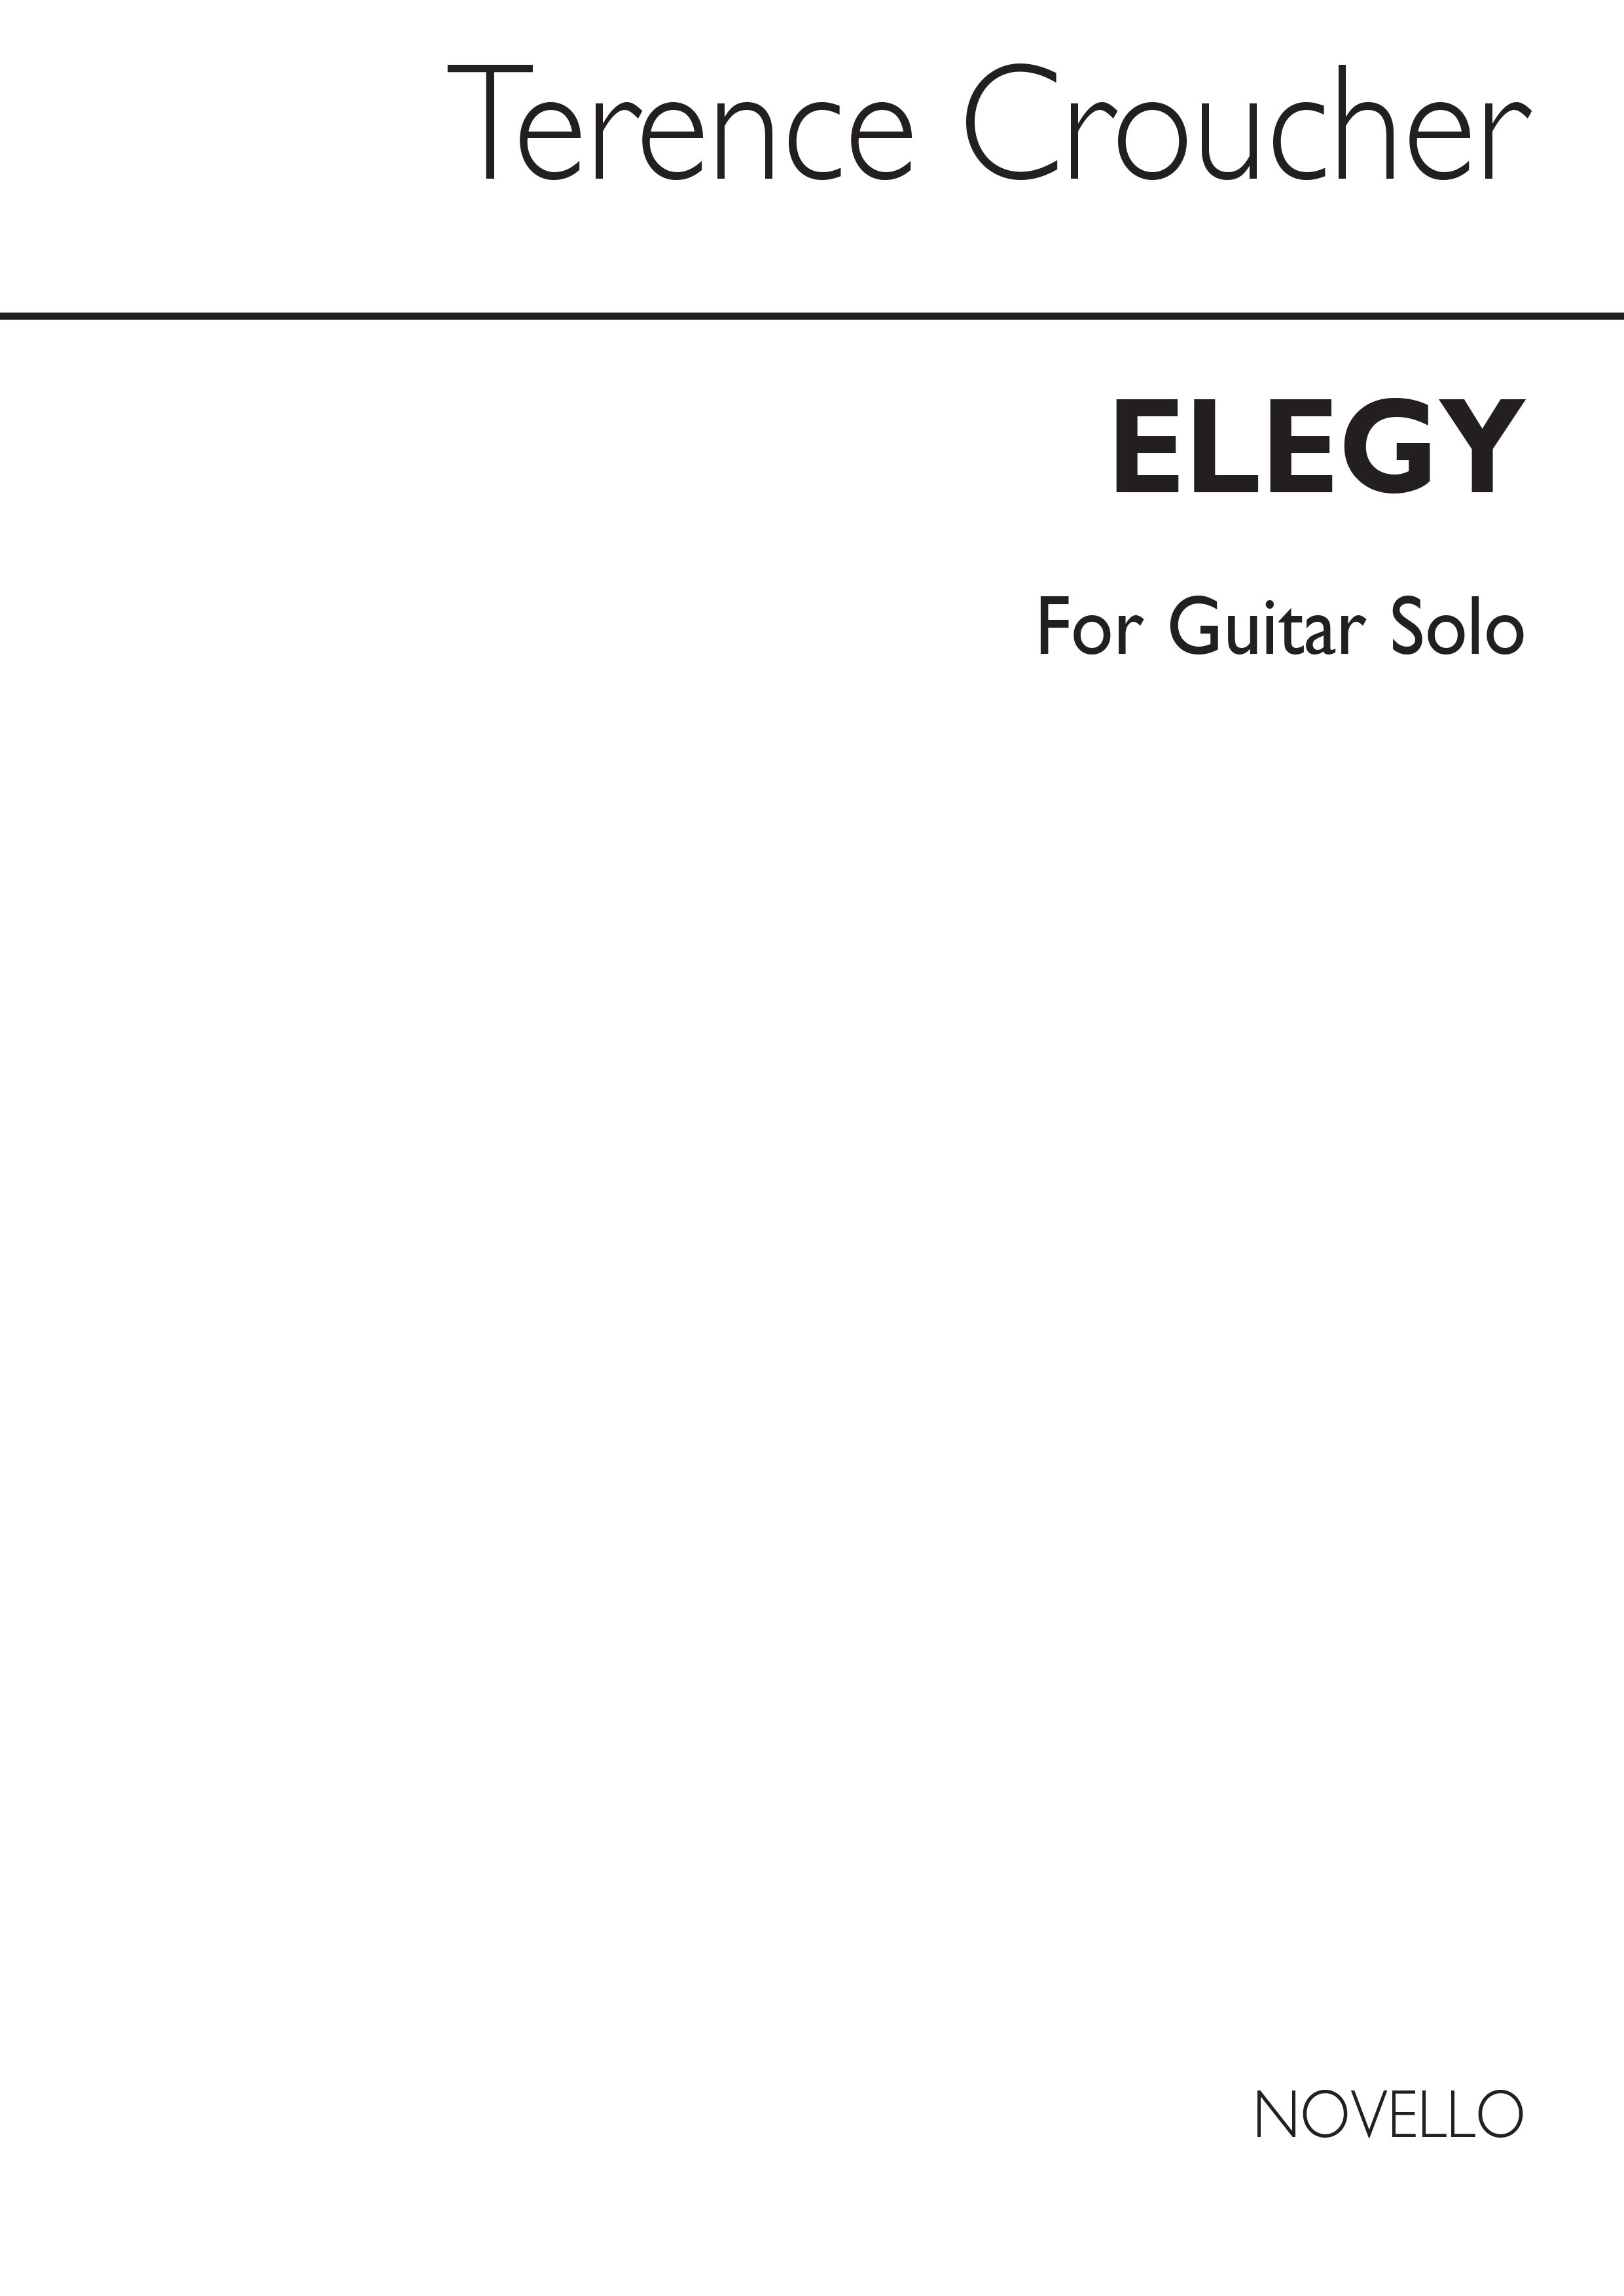 Croucher: Elegy For Guitar